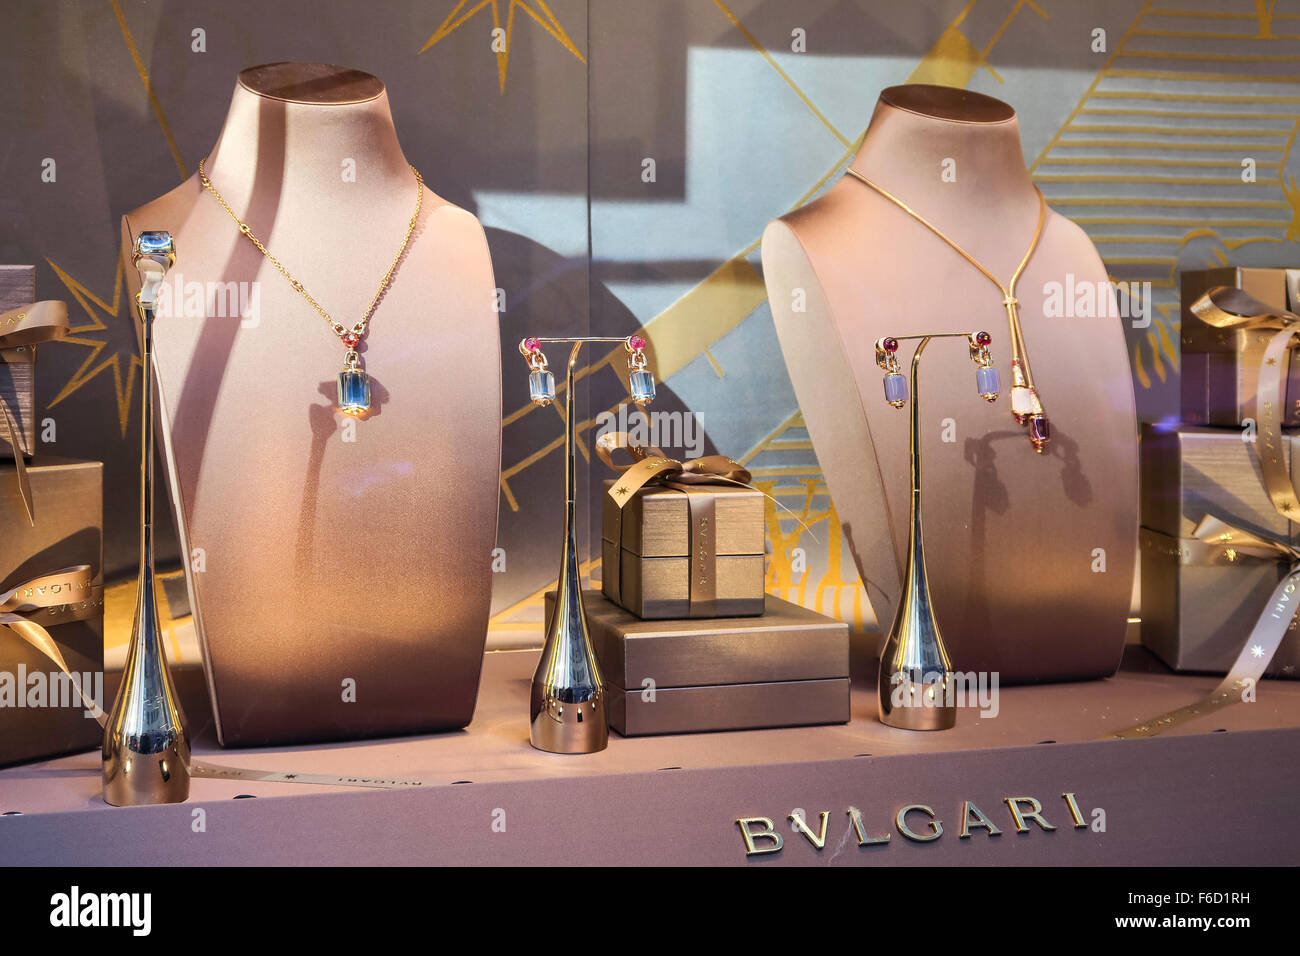 bvlgari jewellery display